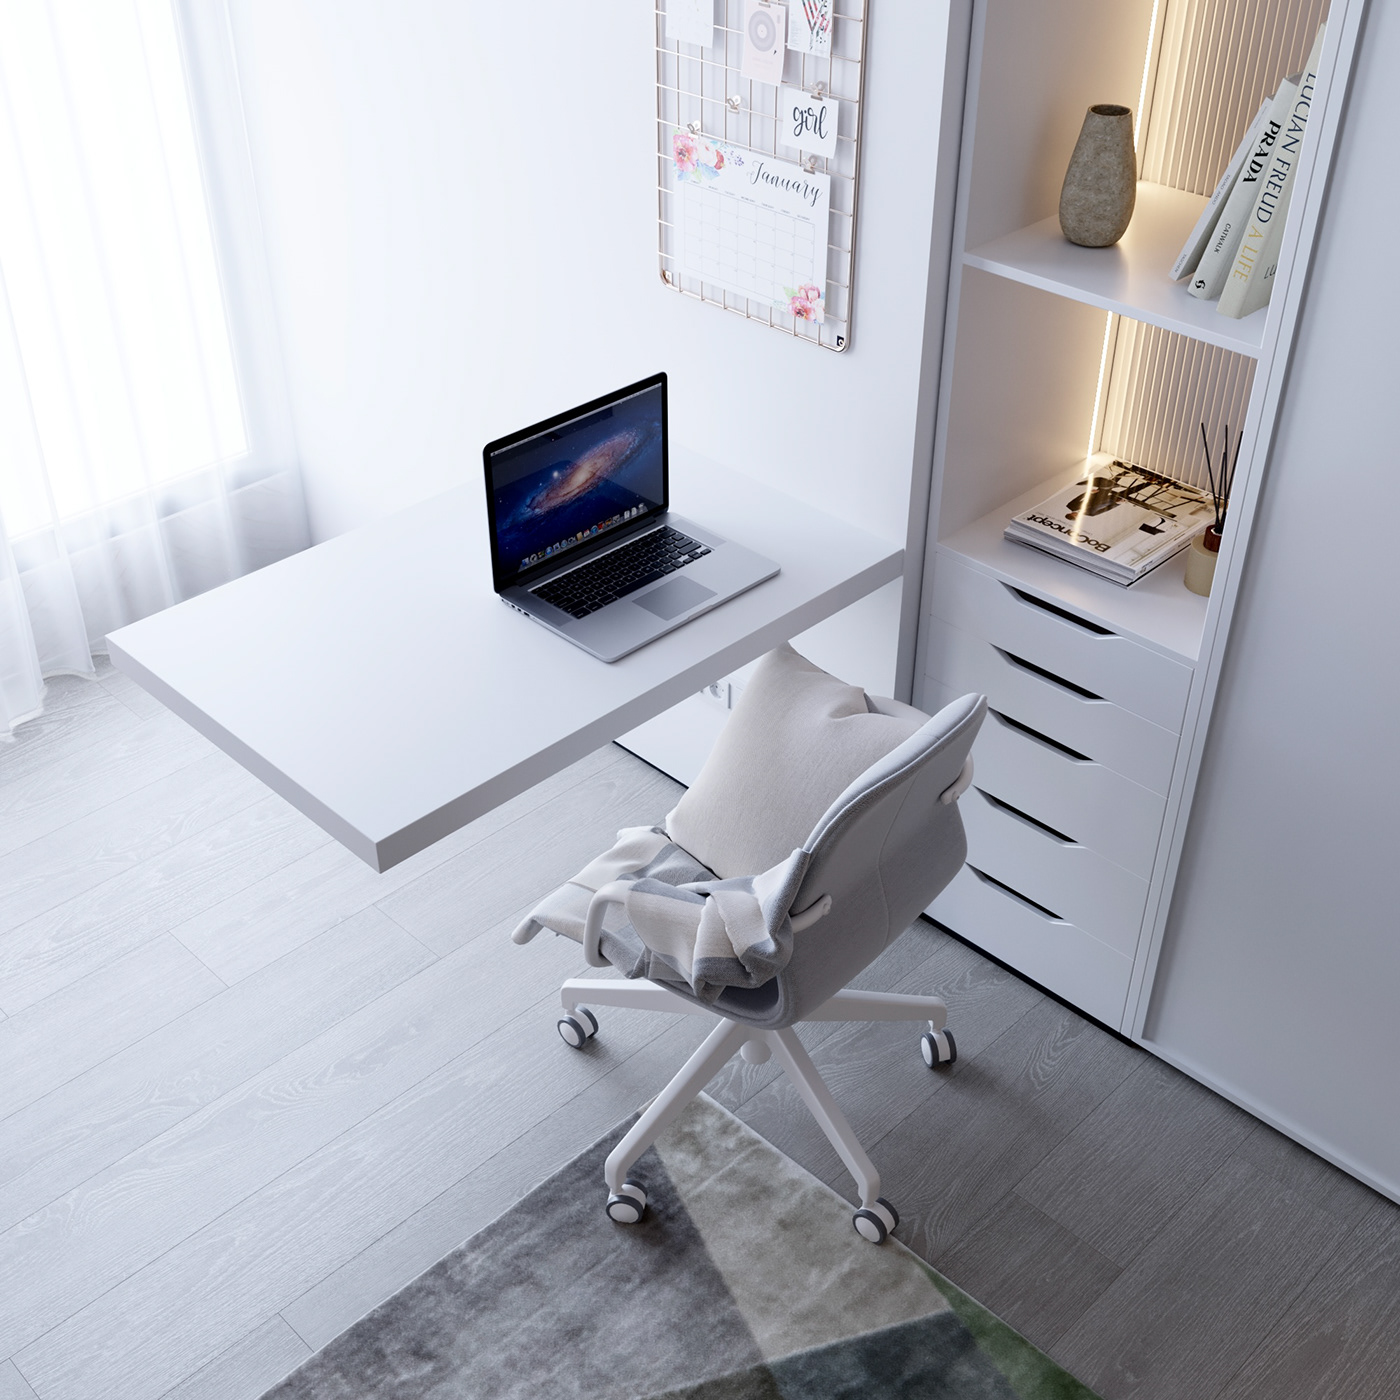 3ds max bedroom child bedroom interior design  modern Render visualization